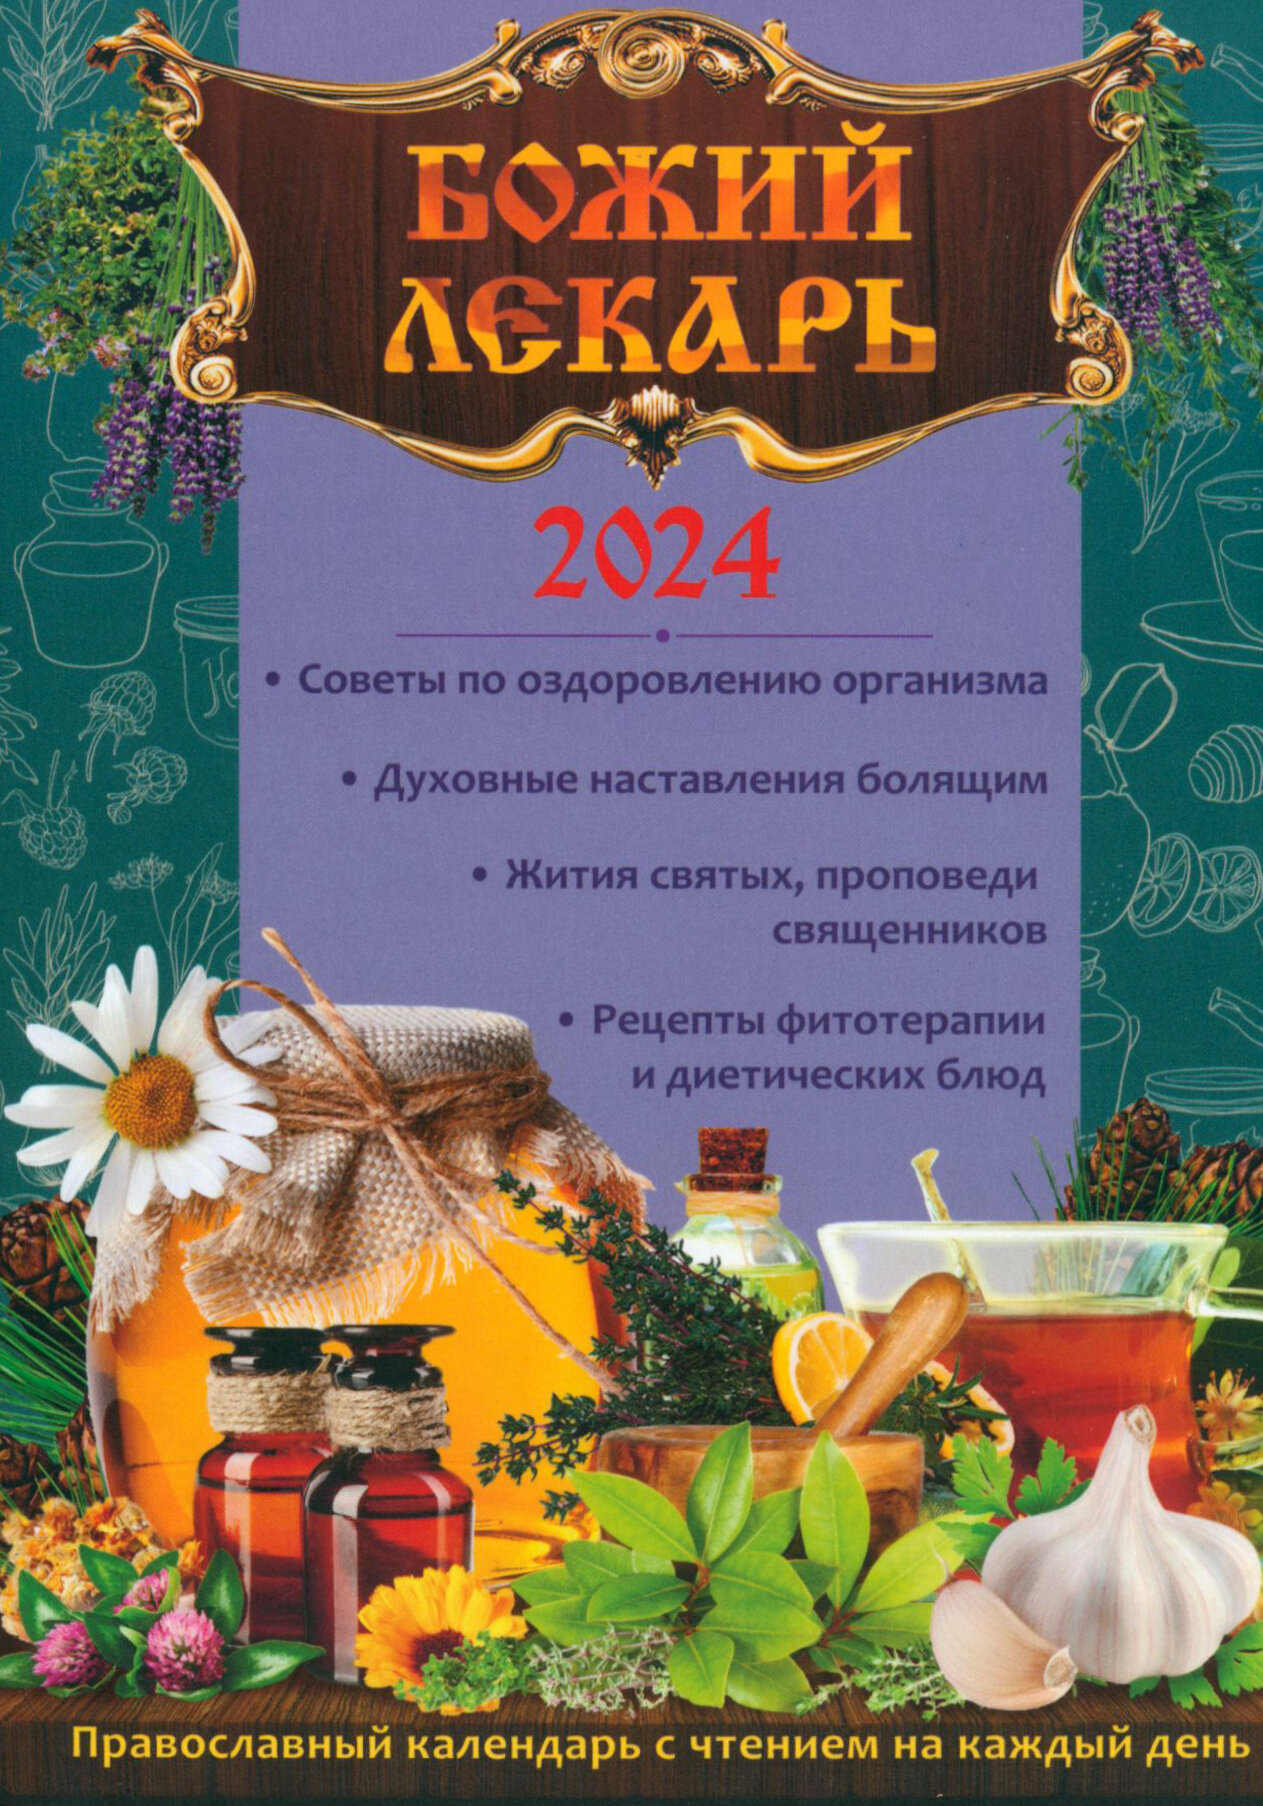 Календарь православный на 2024 год. Божий лекарь - фото №9